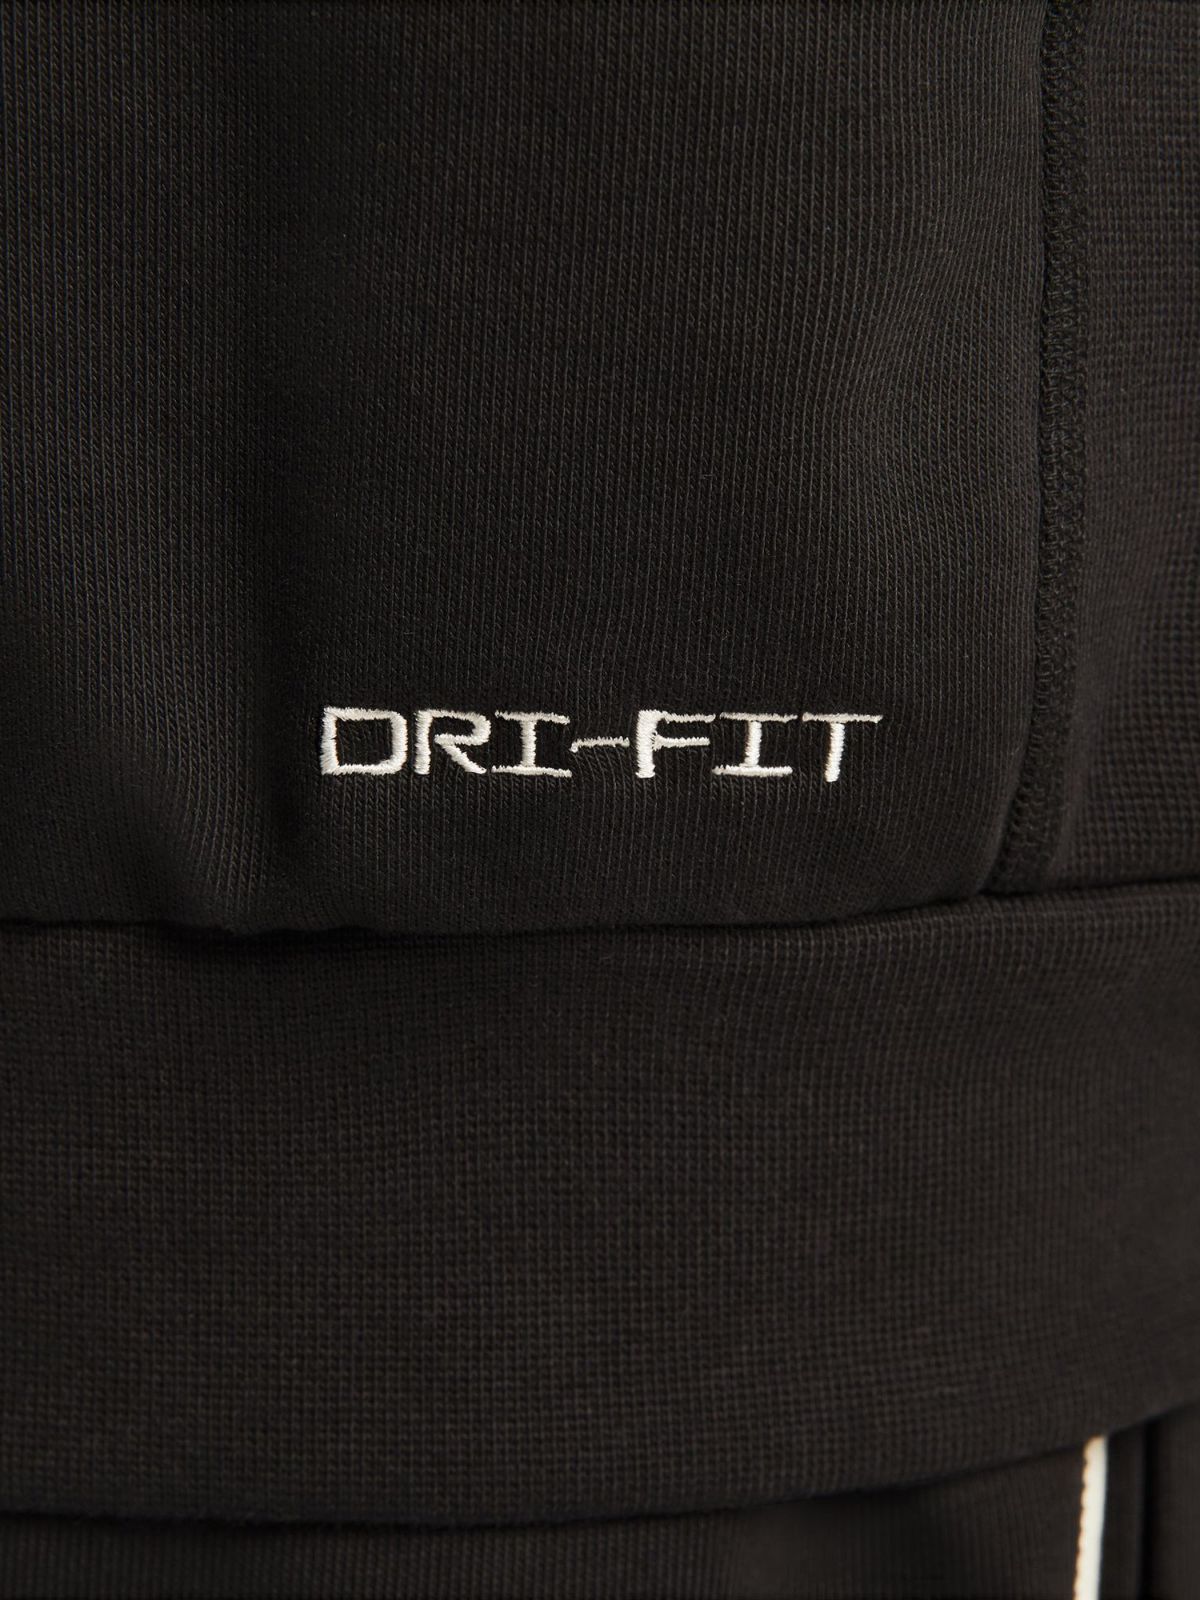  חולצת כדורסל Nike Dri-FIT Standard Issue של NIKE